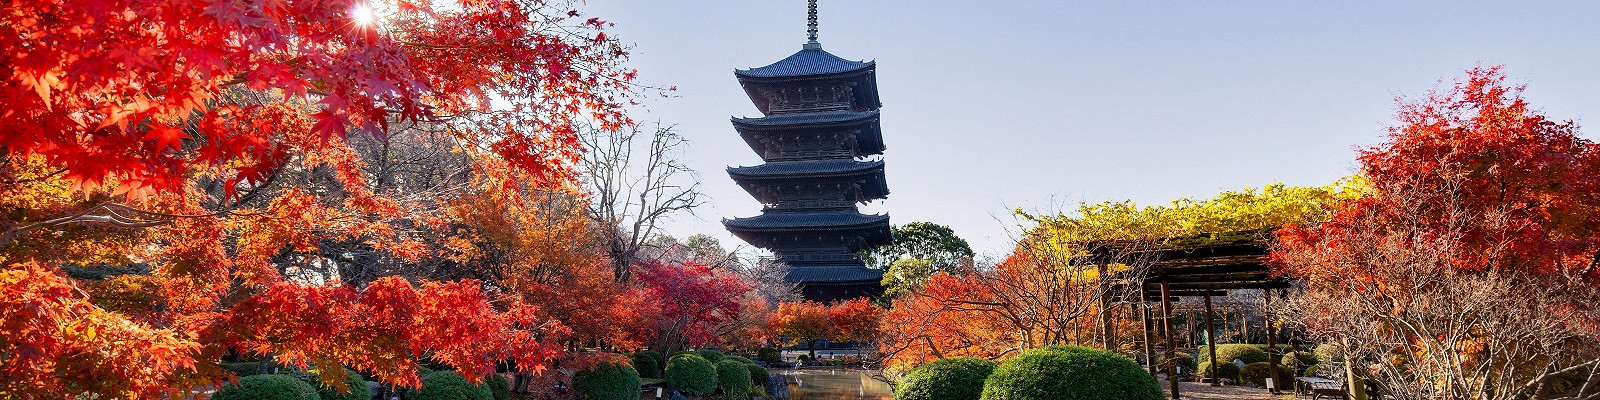 Японский сад. Модель совершенного мироустройства. Часть II